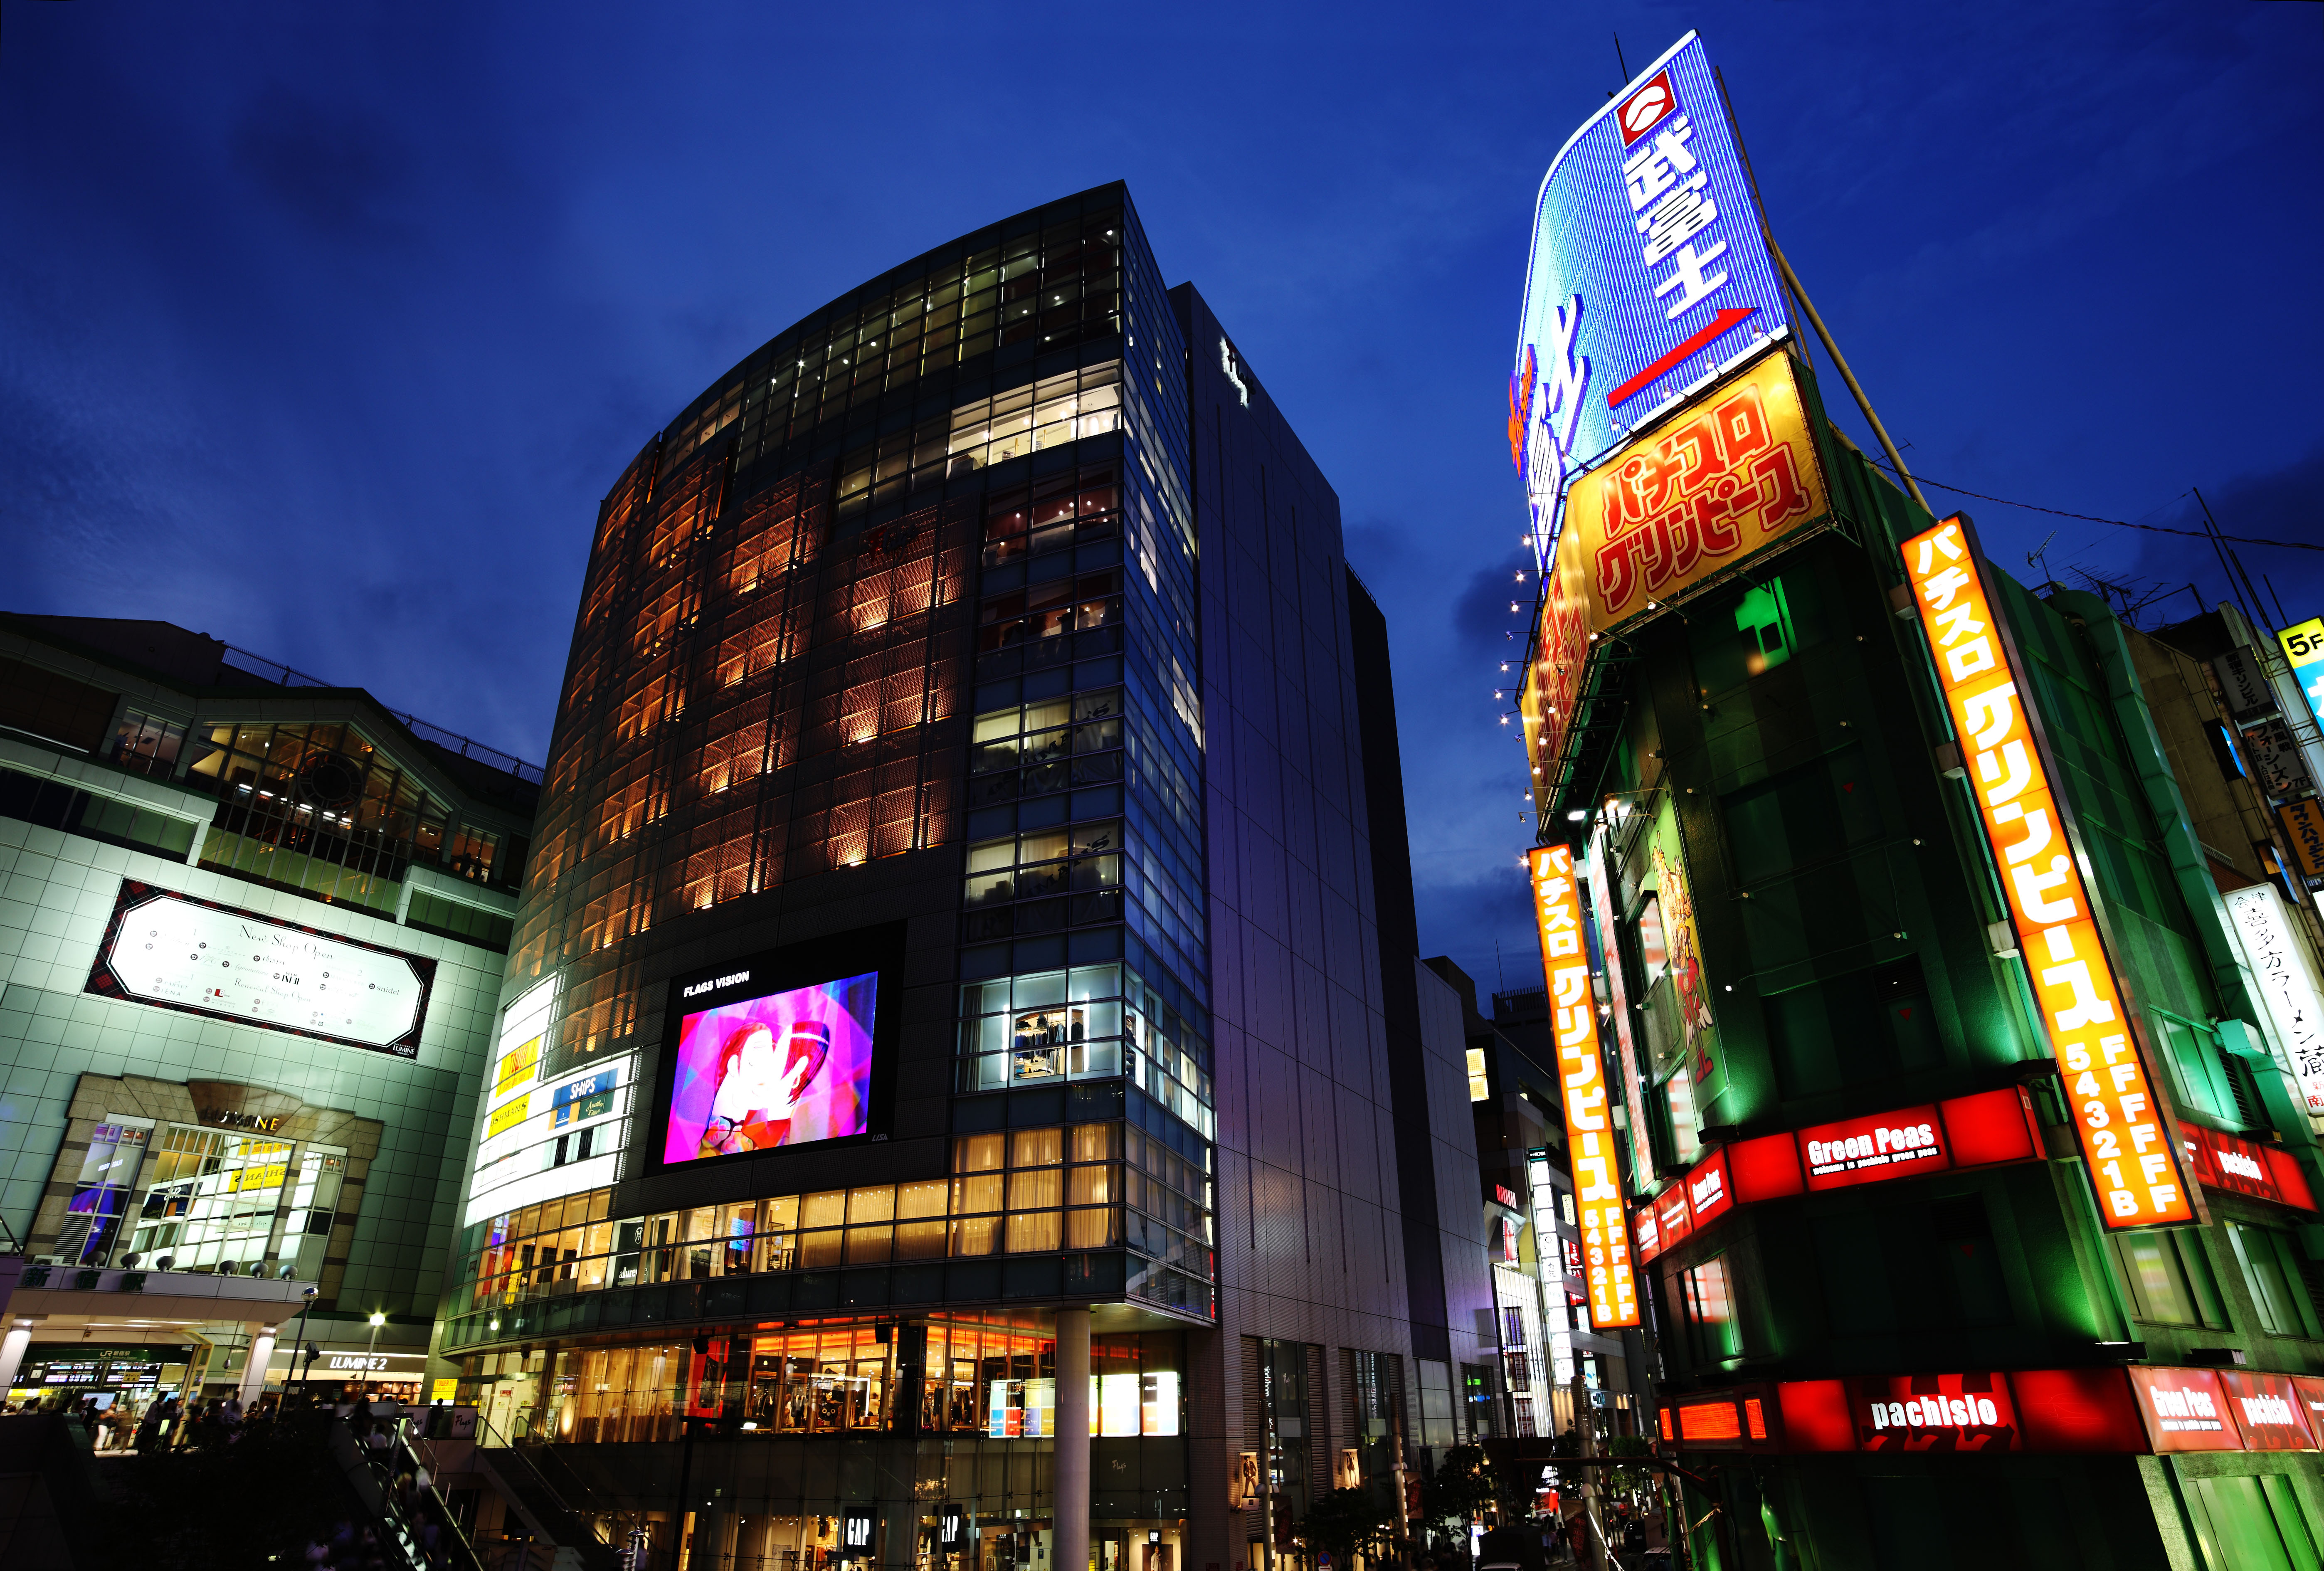 fotografia, material, livra, ajardine, imagine, proveja fotografia,O crepsculo de Estao de Shinjuku, O centro da cidade, Shinjuku, reas comerciais, cidade